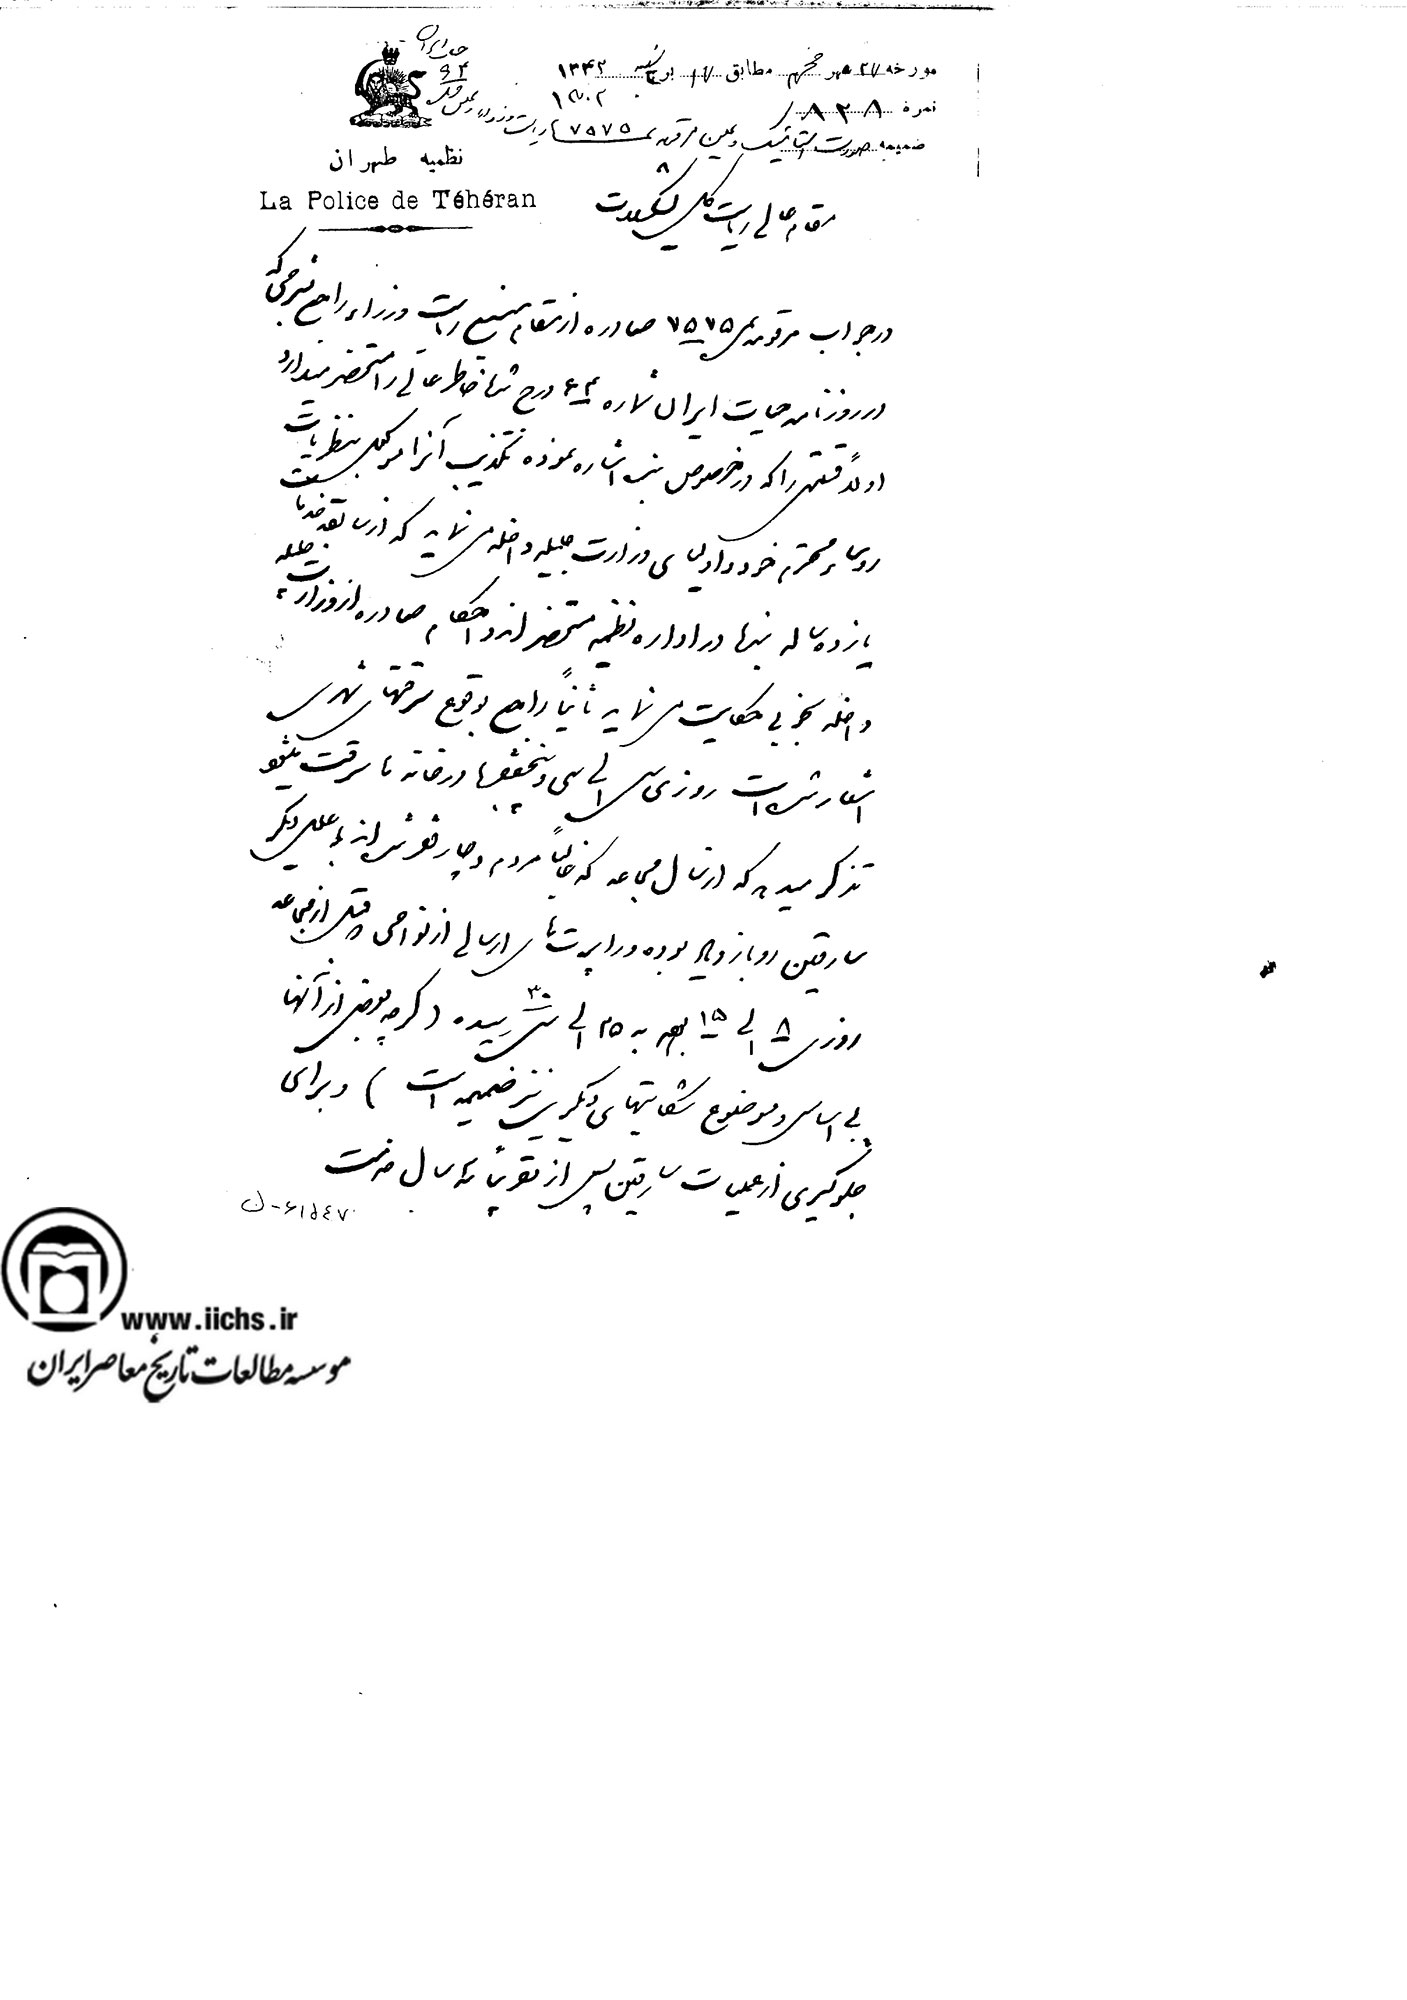 نامه اداره نظمیه تهران به ریاست کل تشکیلات در خصوص ادعای اهالی تهران درباره سرقت